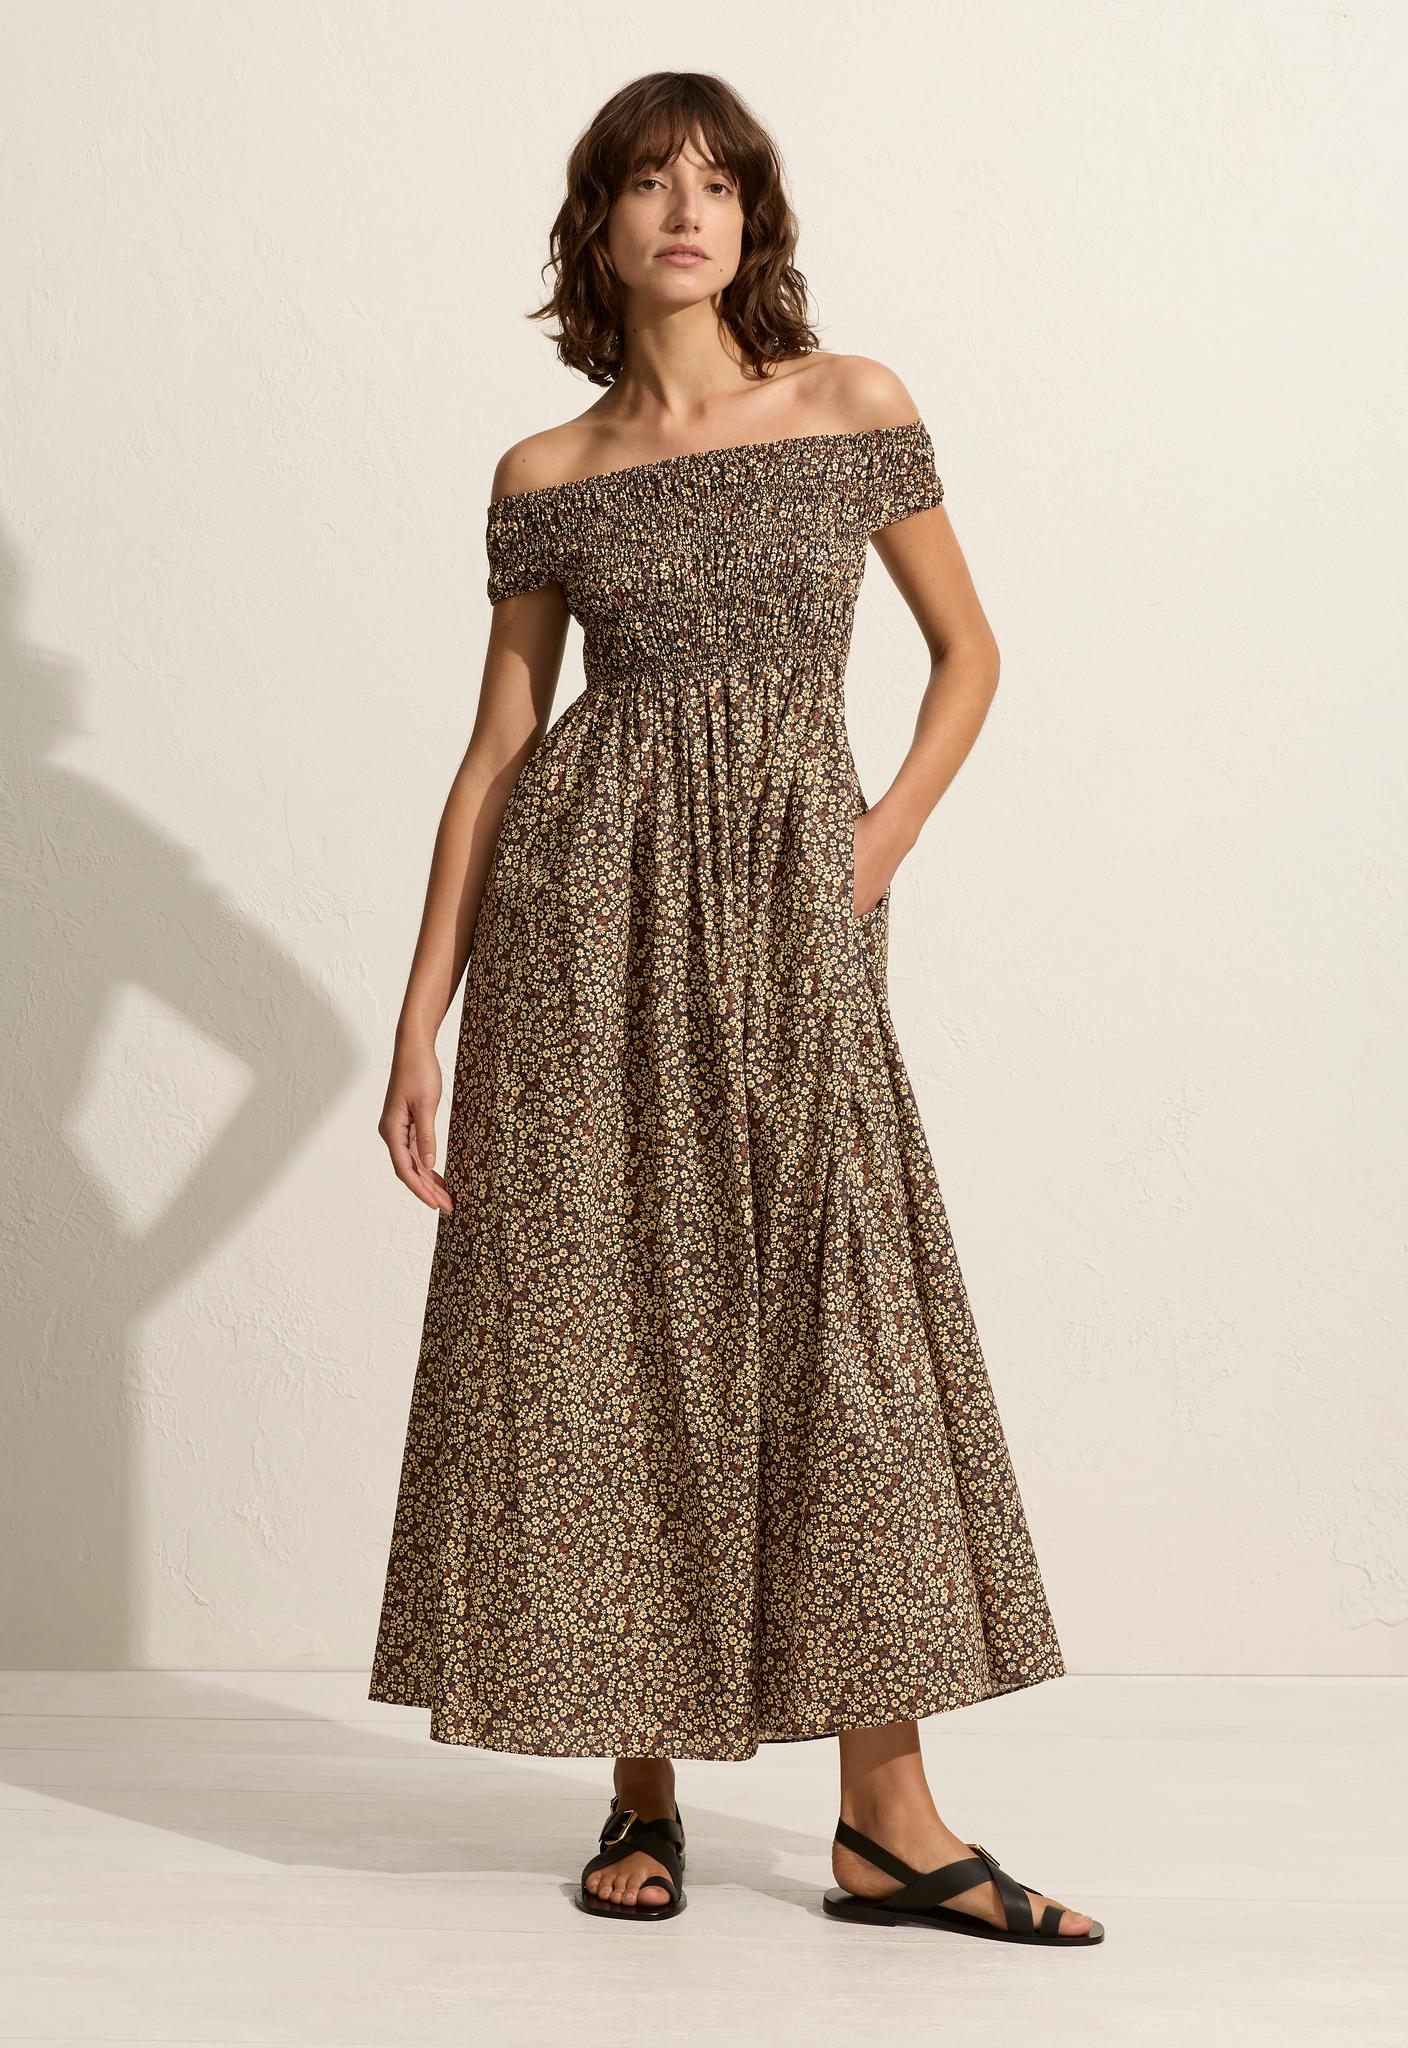 Shirred Off The Shoulder Dress - Matteau